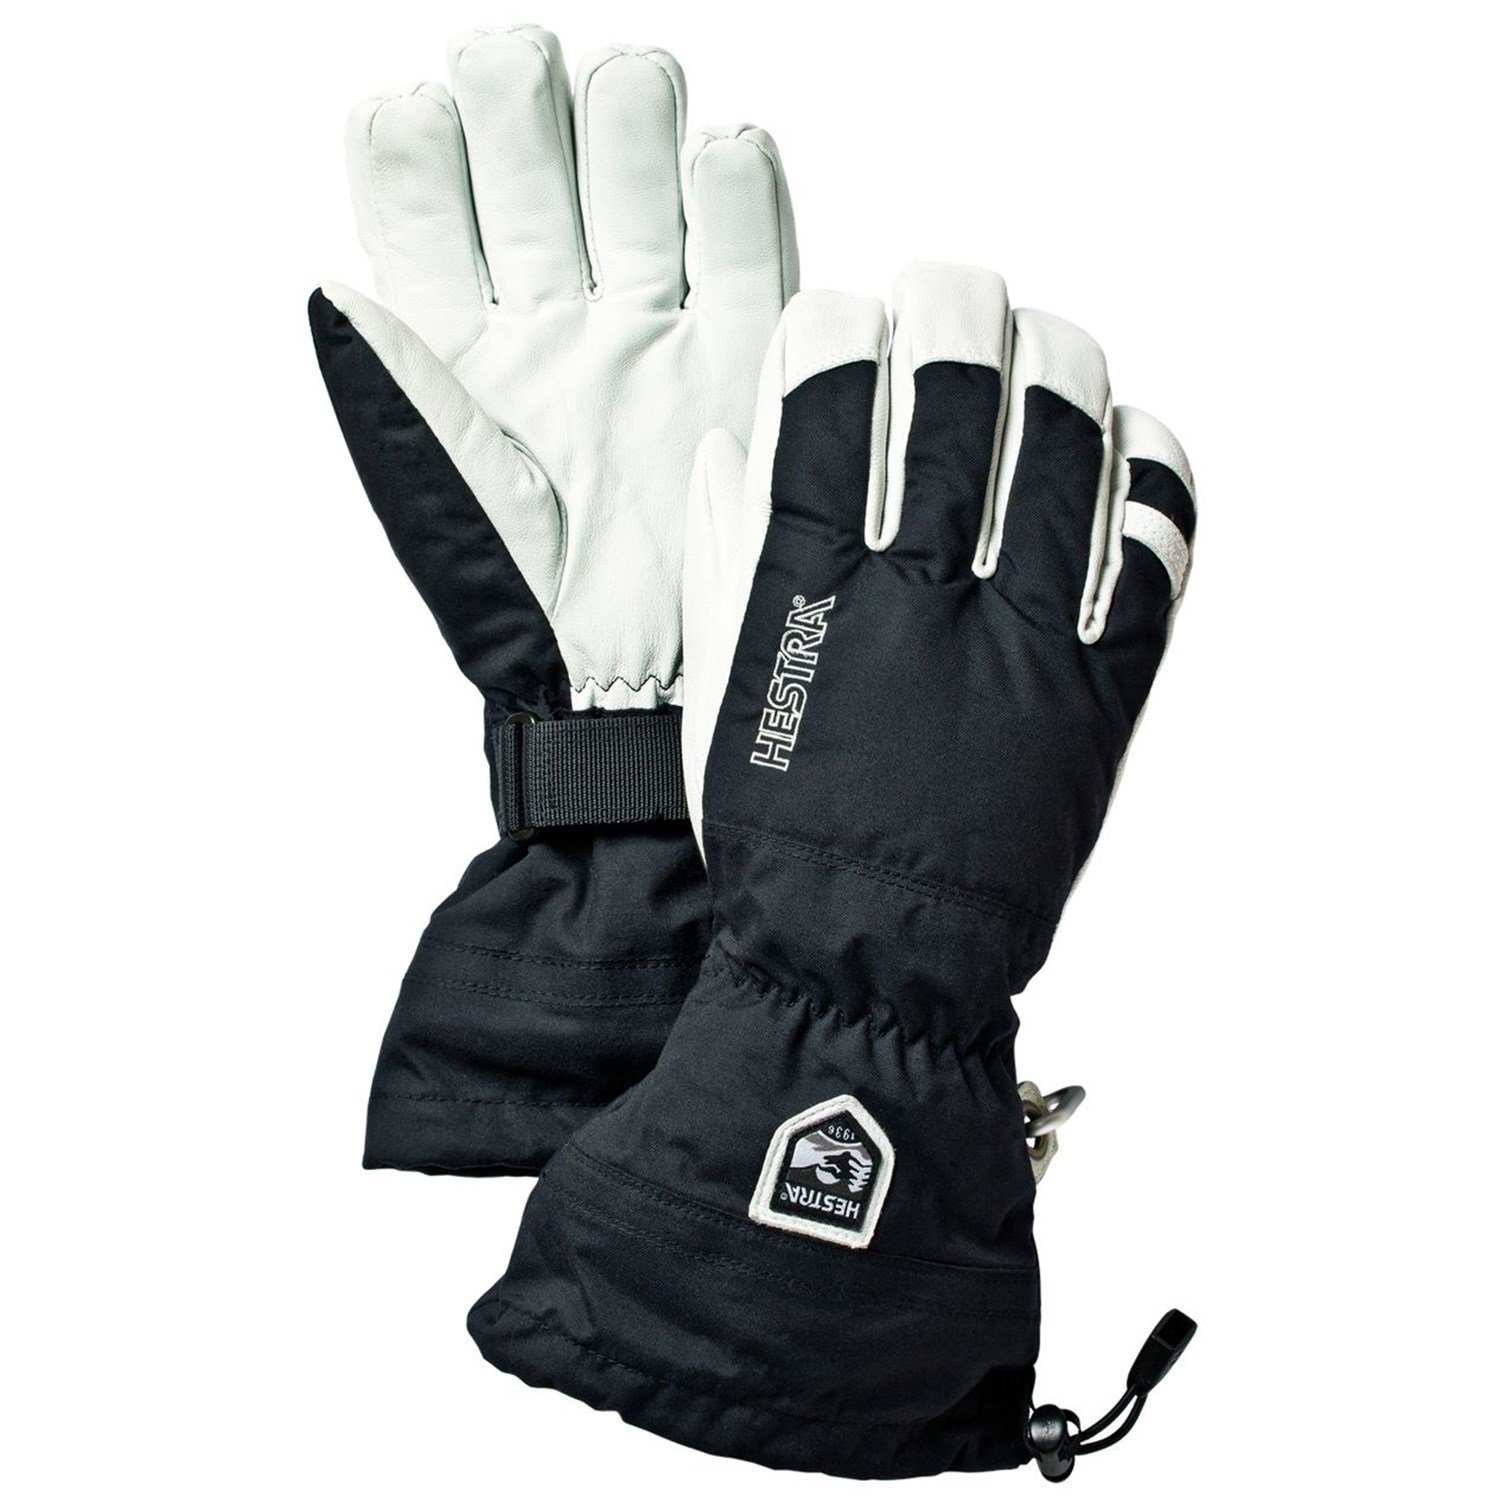 紫③ Hestra Army Leather Heli Ski Glove Classic 5-Finger Snow Glove for  Skiing, Snowboarding and Mountaineering, Mustard, 8並行輸入 